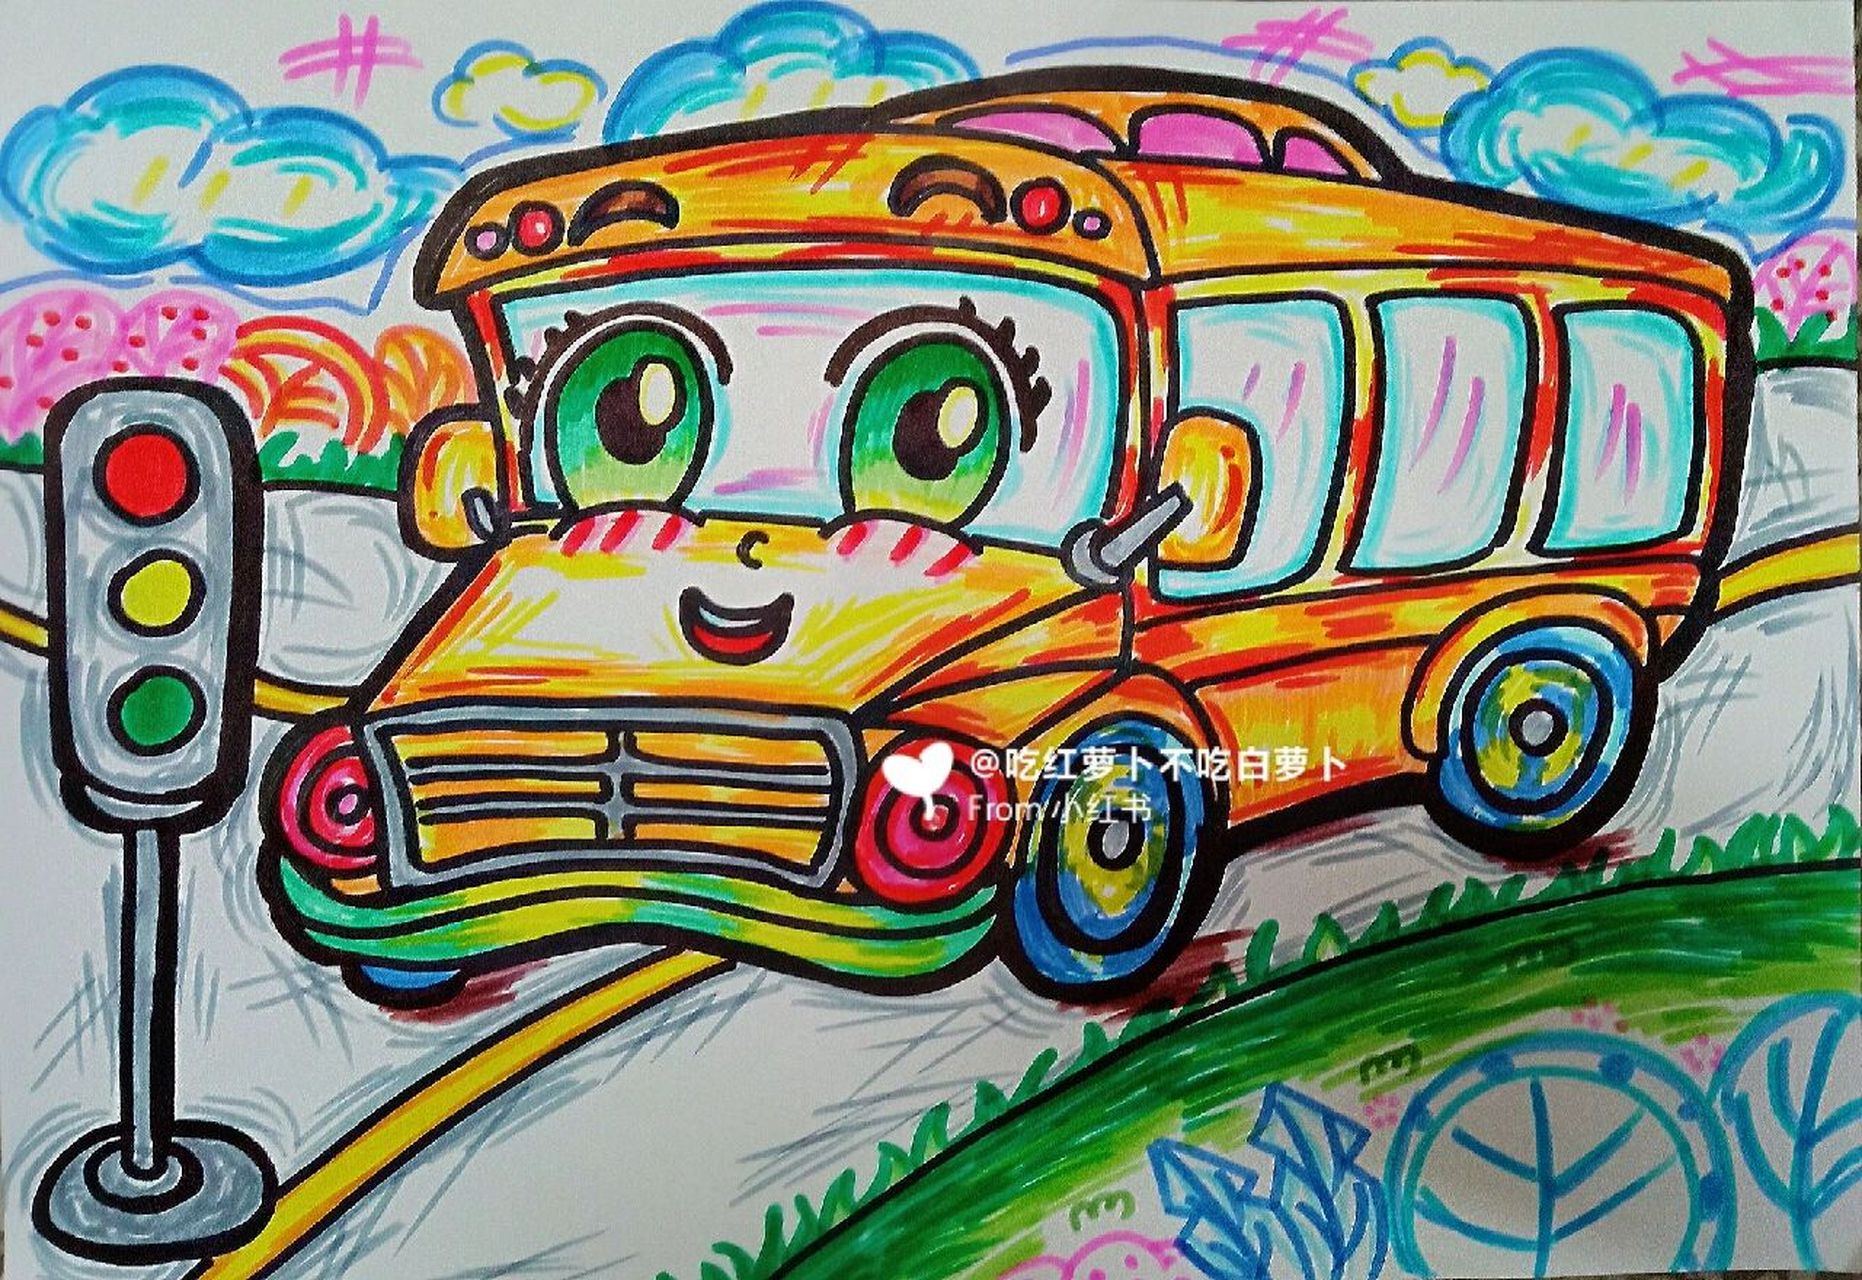 公交车卡通简笔画图片